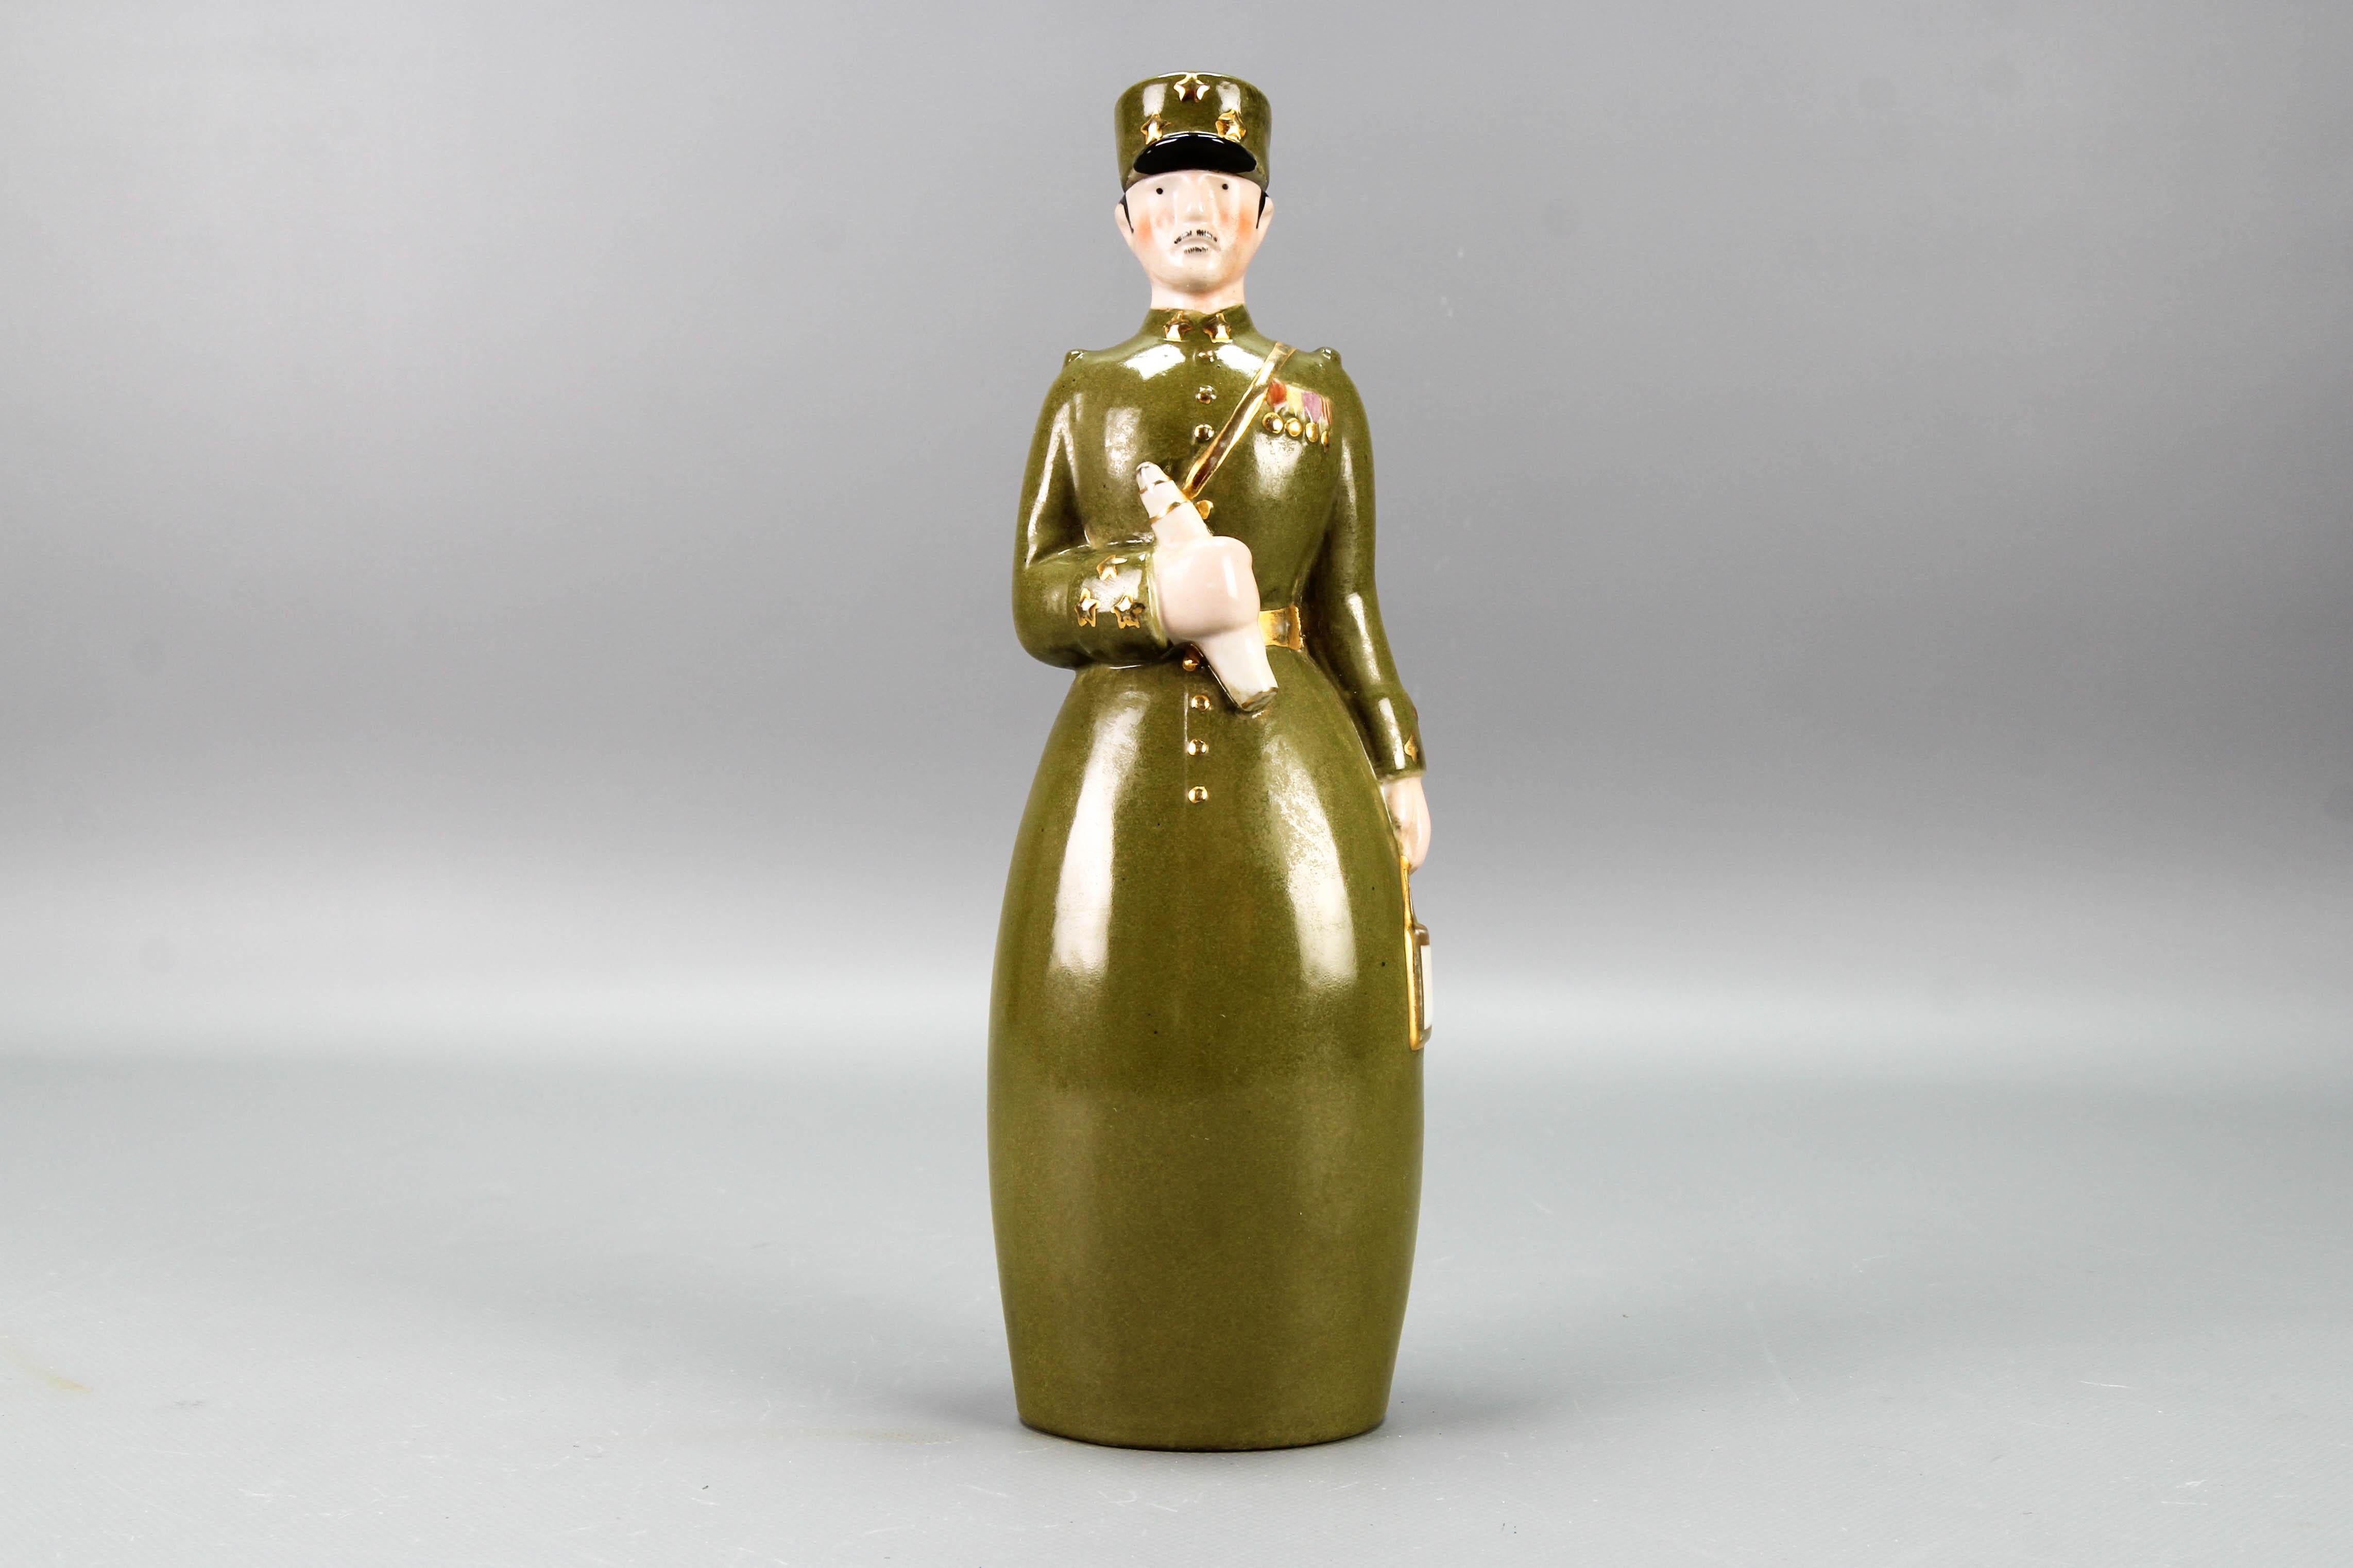 French Art Deco glazed ceramic figural liquor bottle 